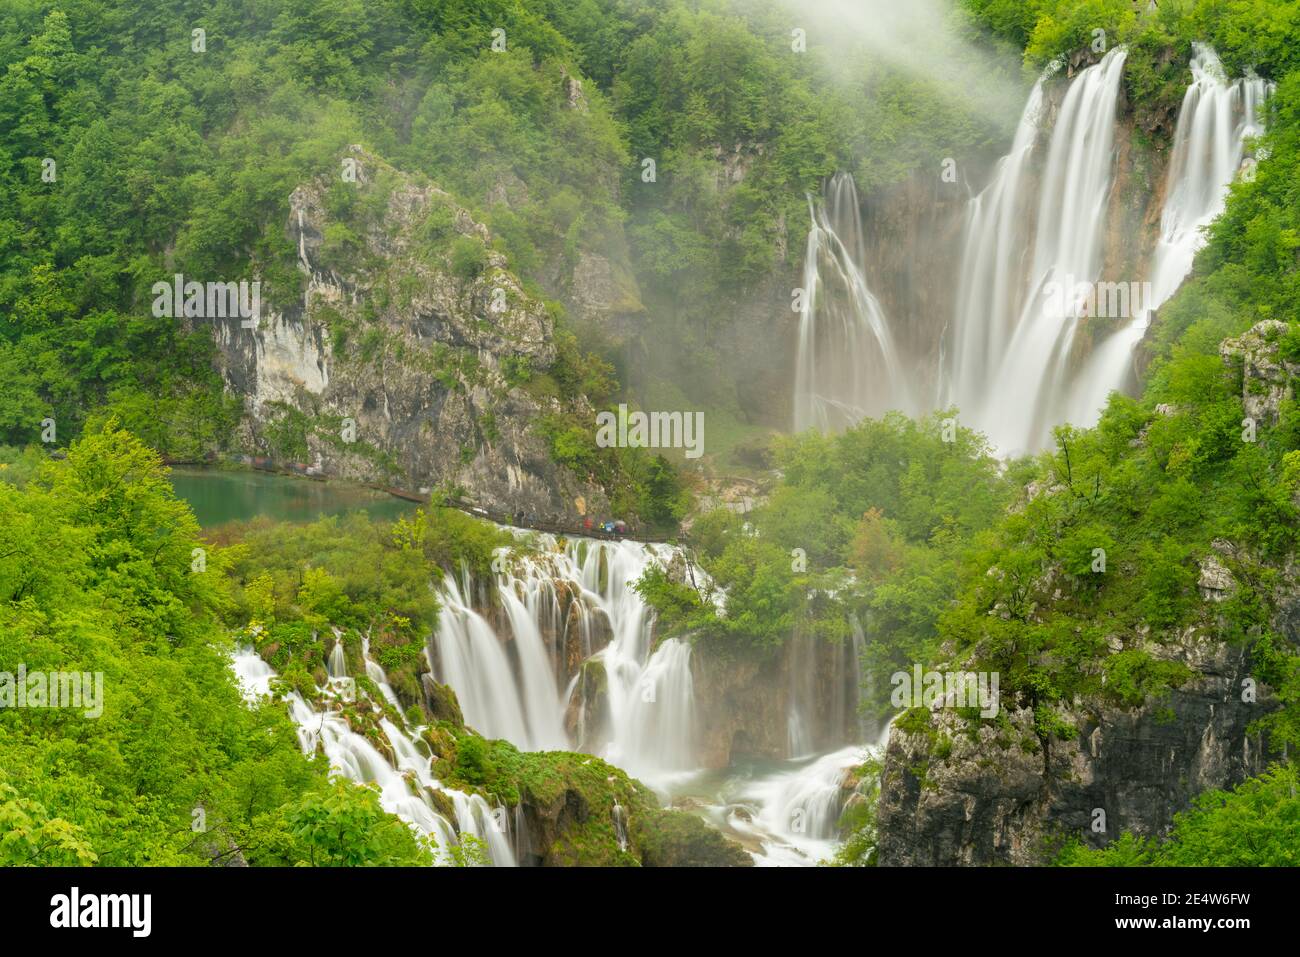 plan d'exposition de longue durée de la chute d'eau de veliki, la plus grande chute d'eau de plitvice, à l'occasion d'une journée pluvieuse dans le parc national des lacs de plitvice en croatie Banque D'Images